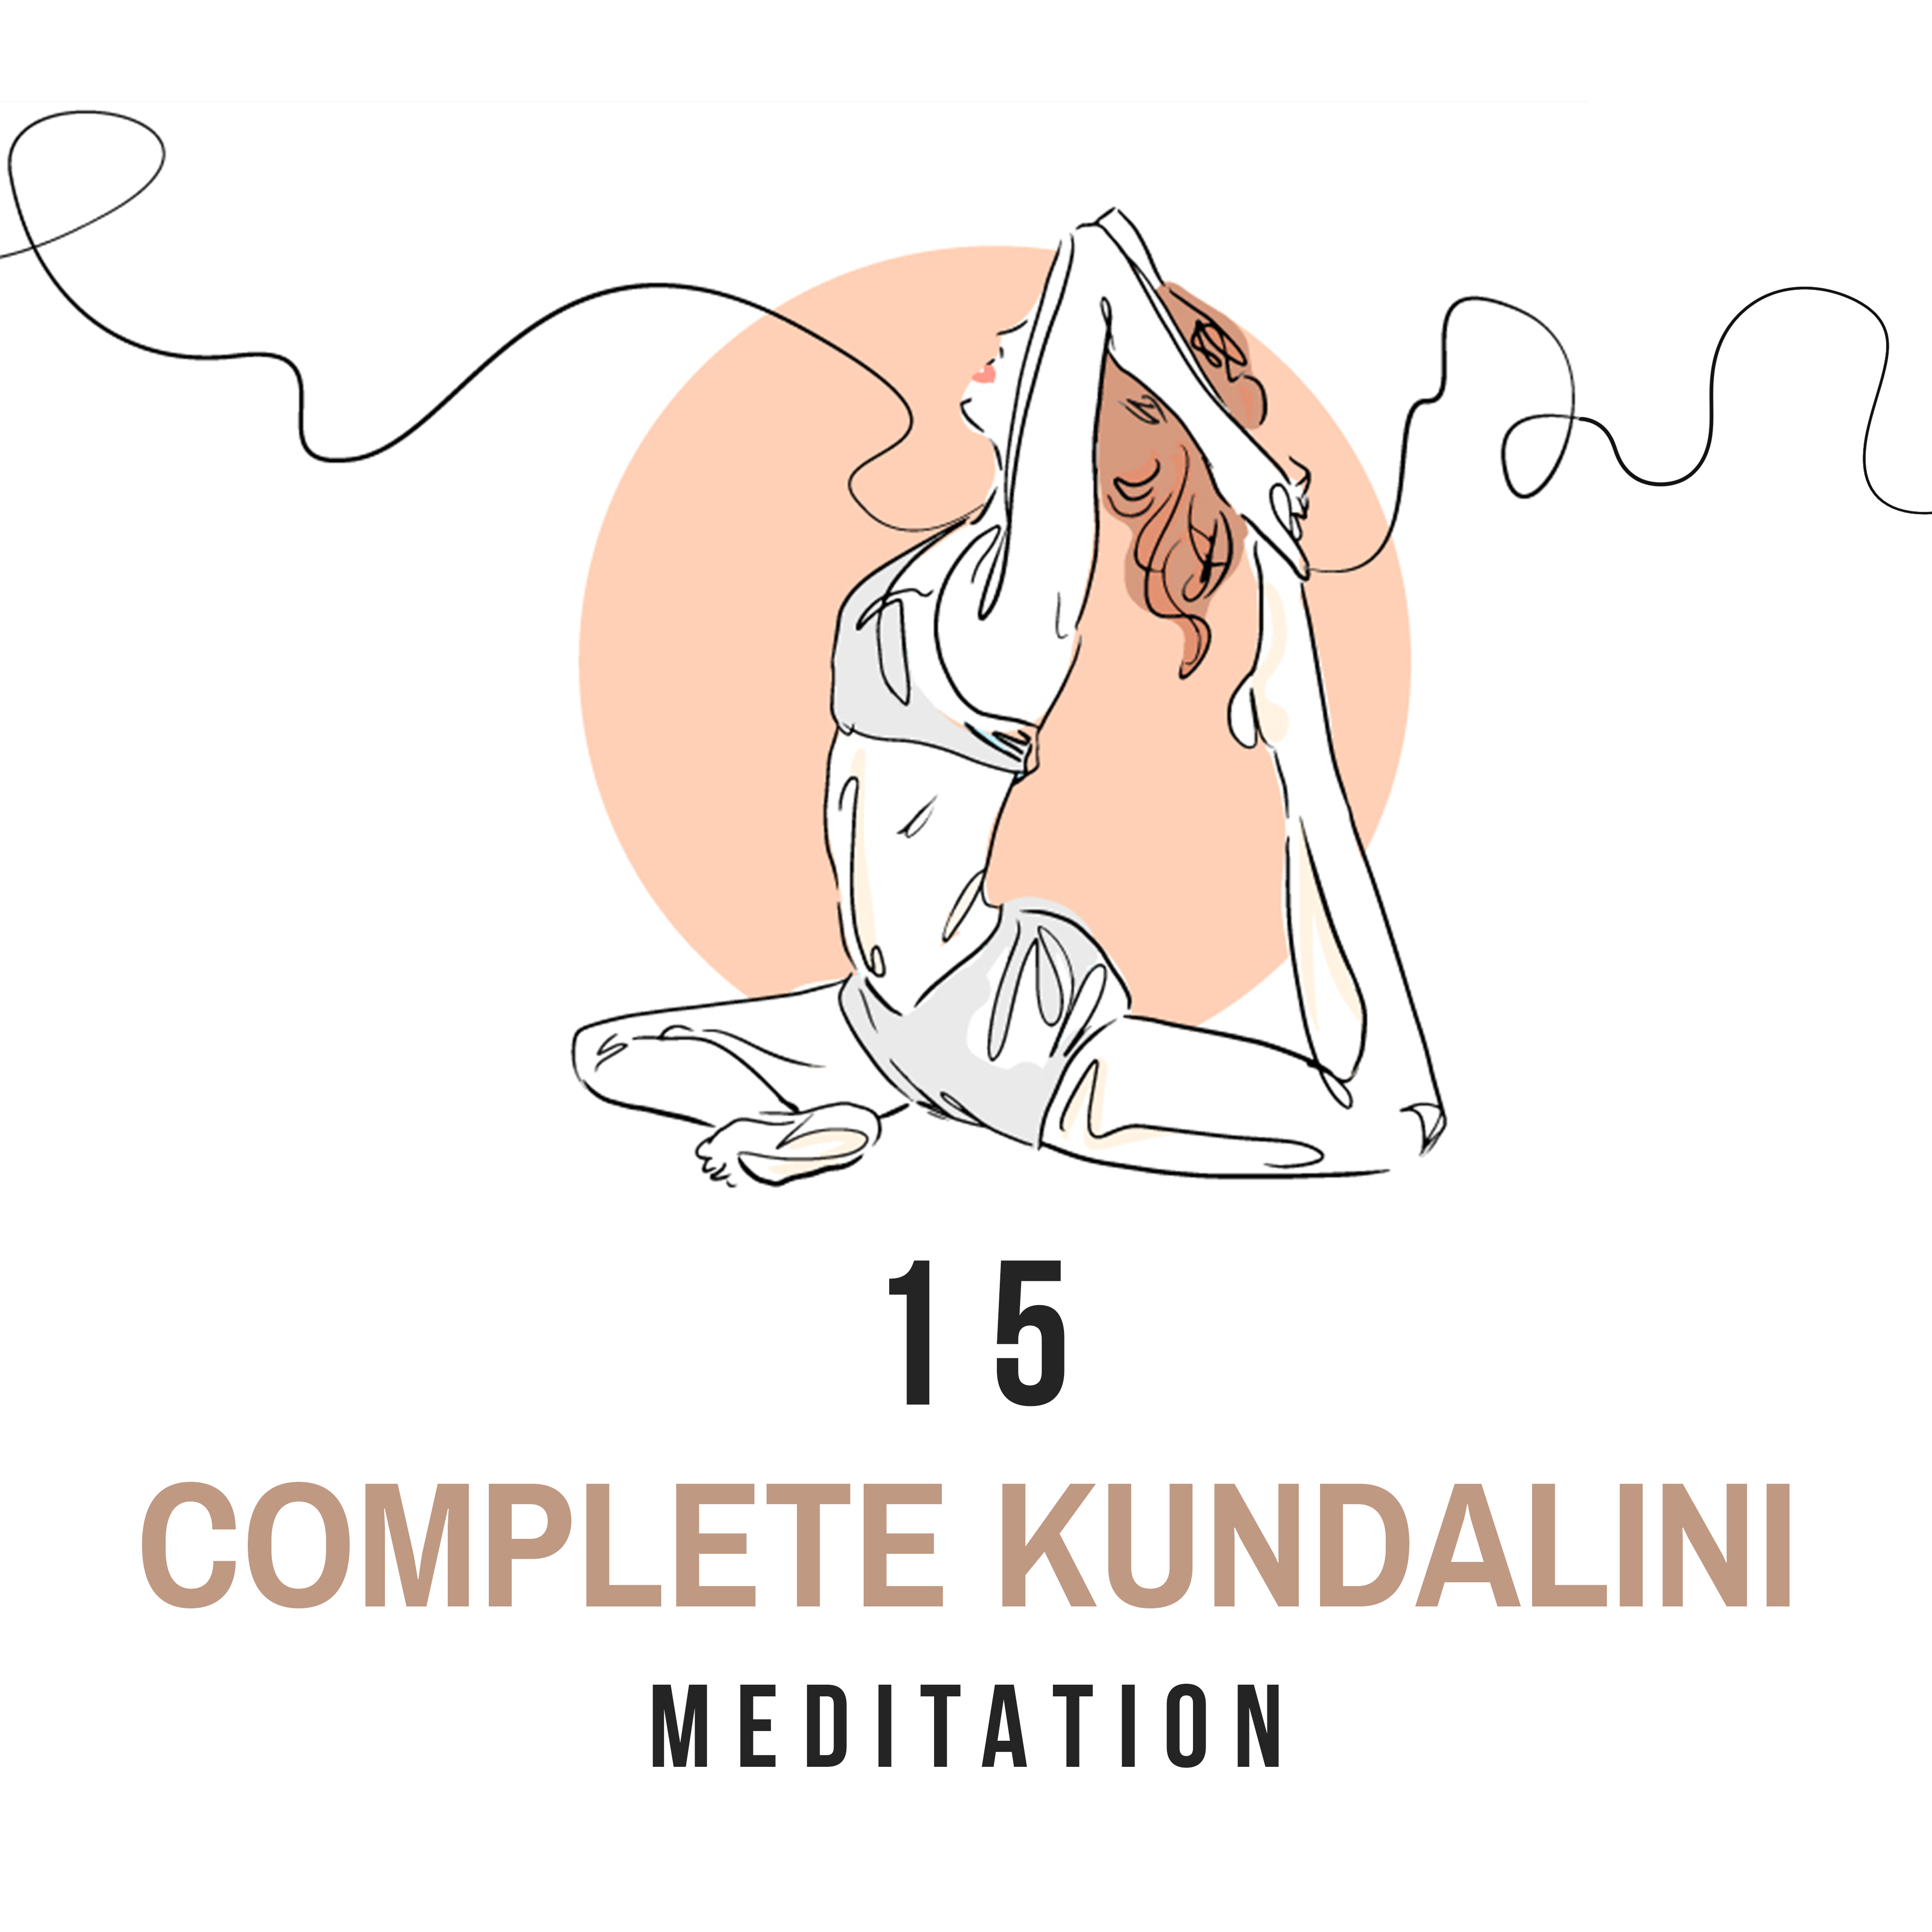 15 Complete Kundalini Meditation